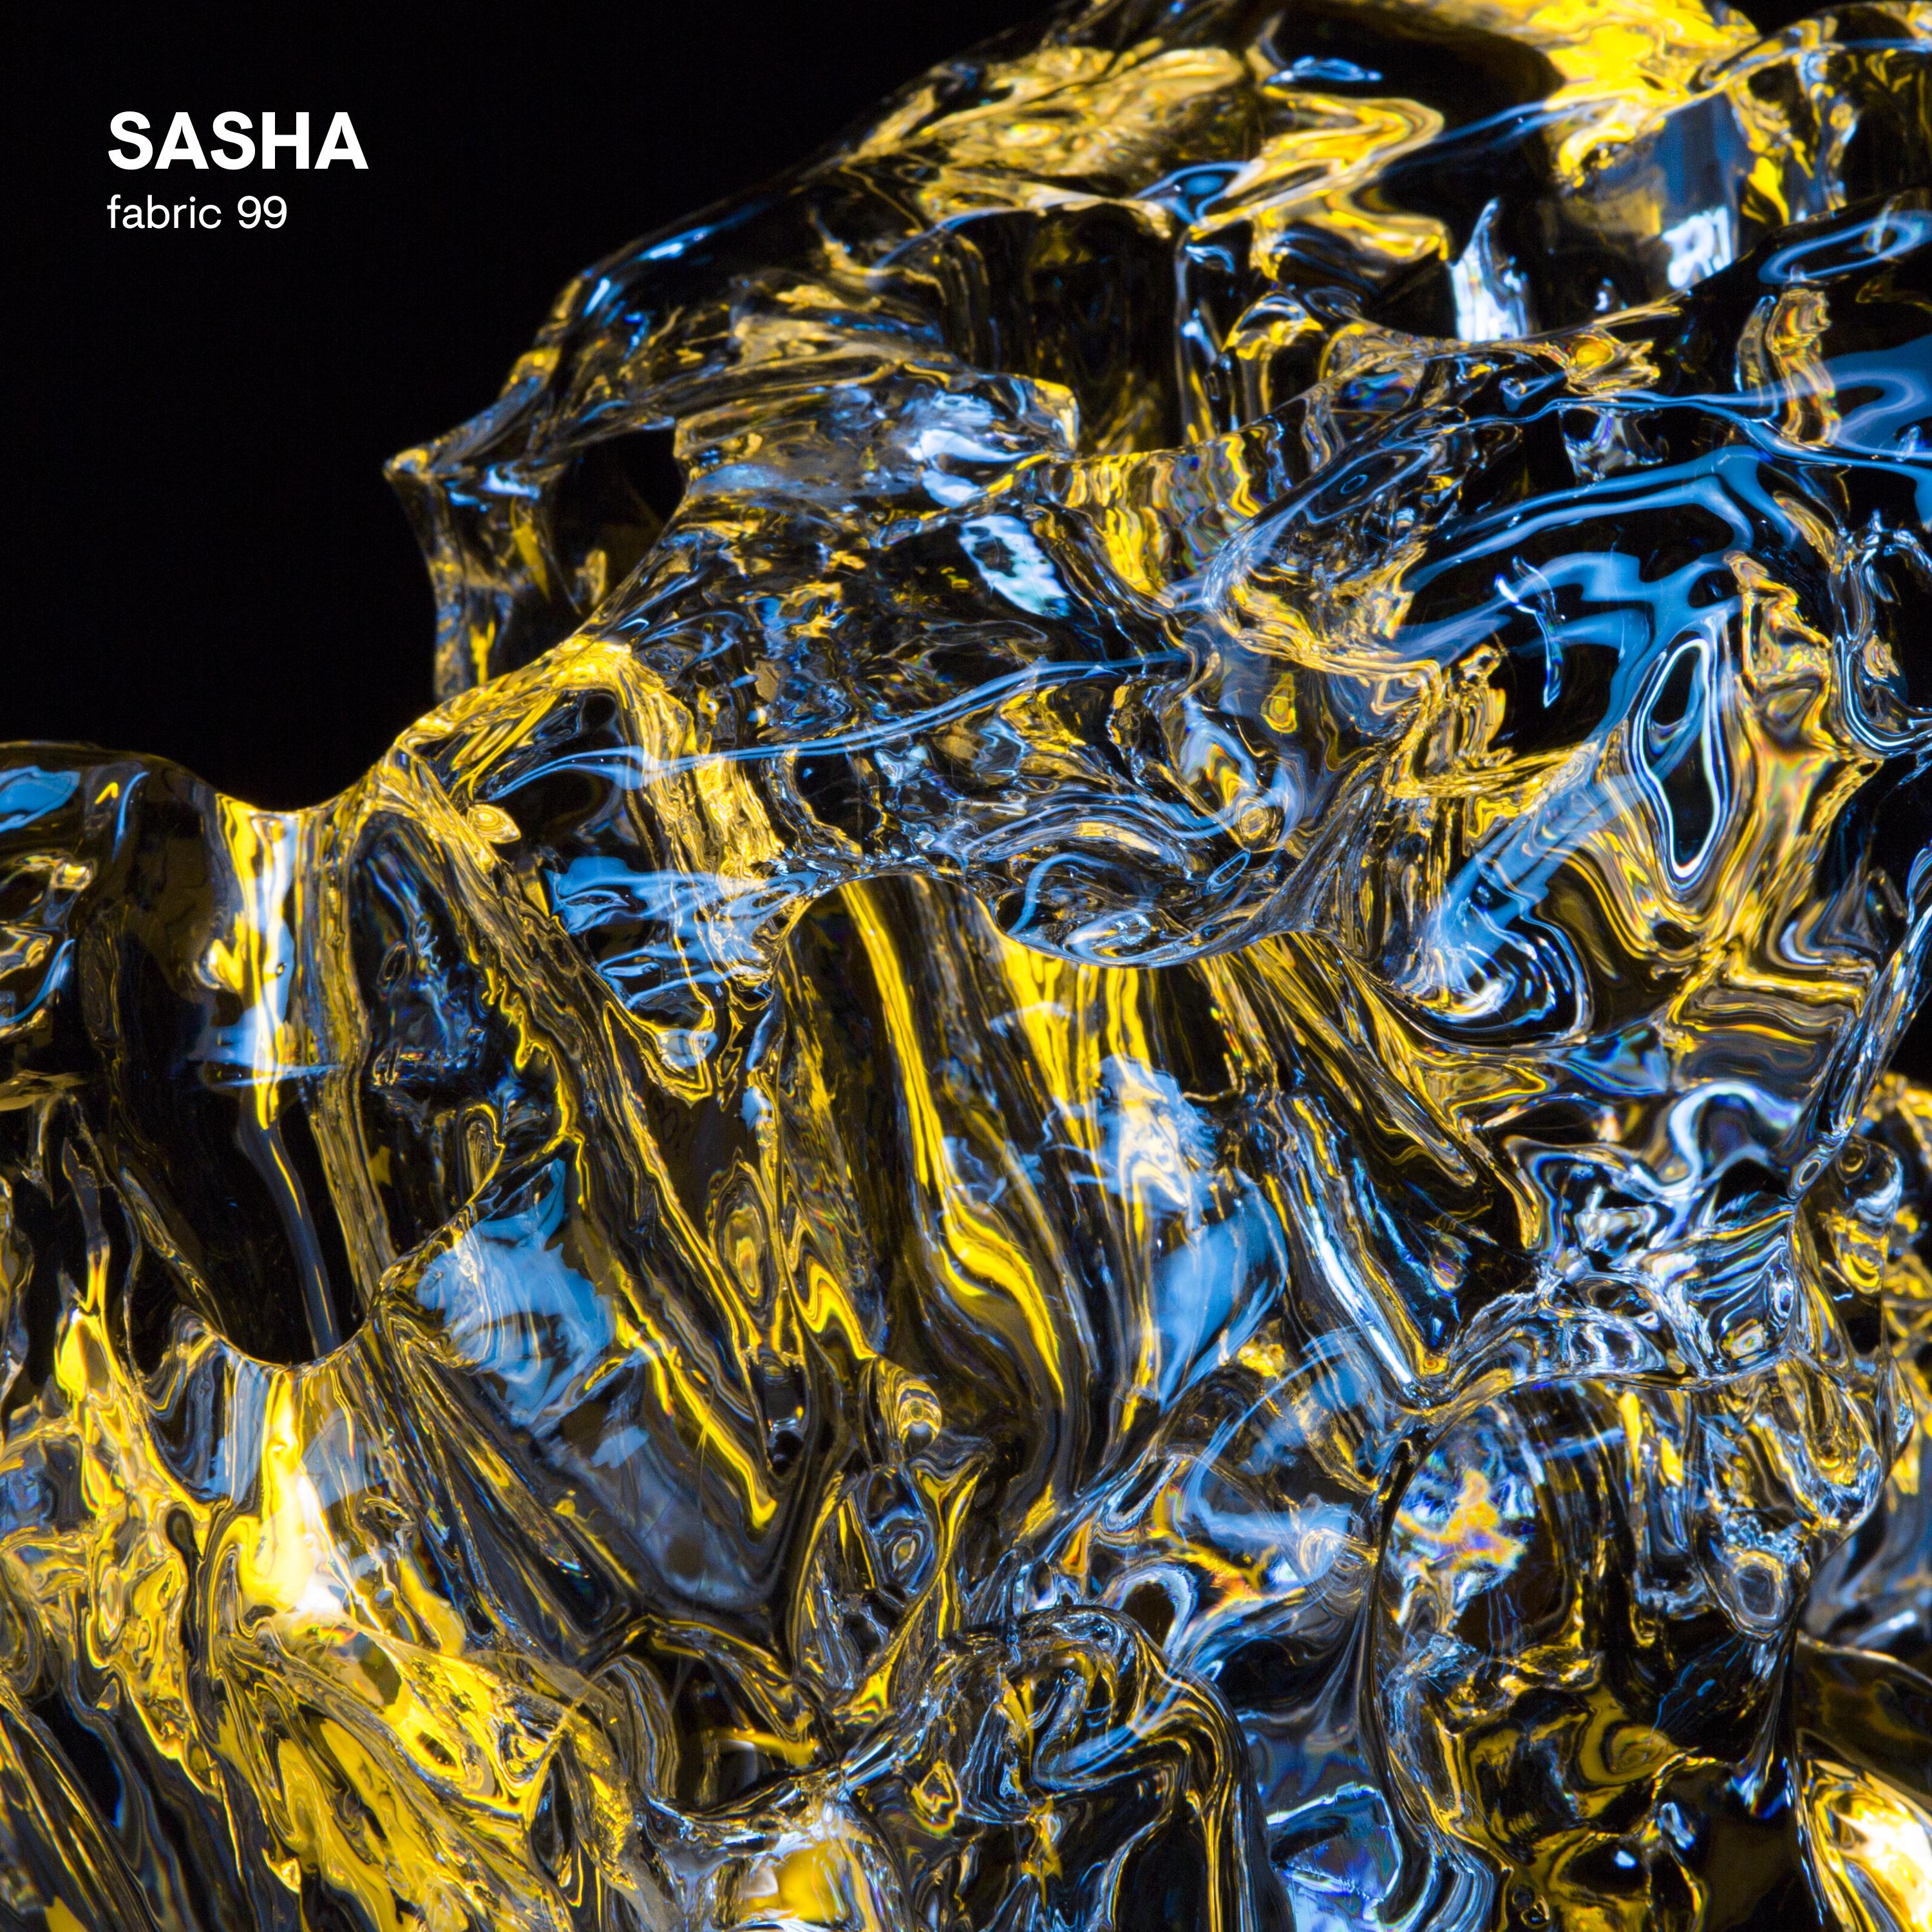 fabric 99: Sasha